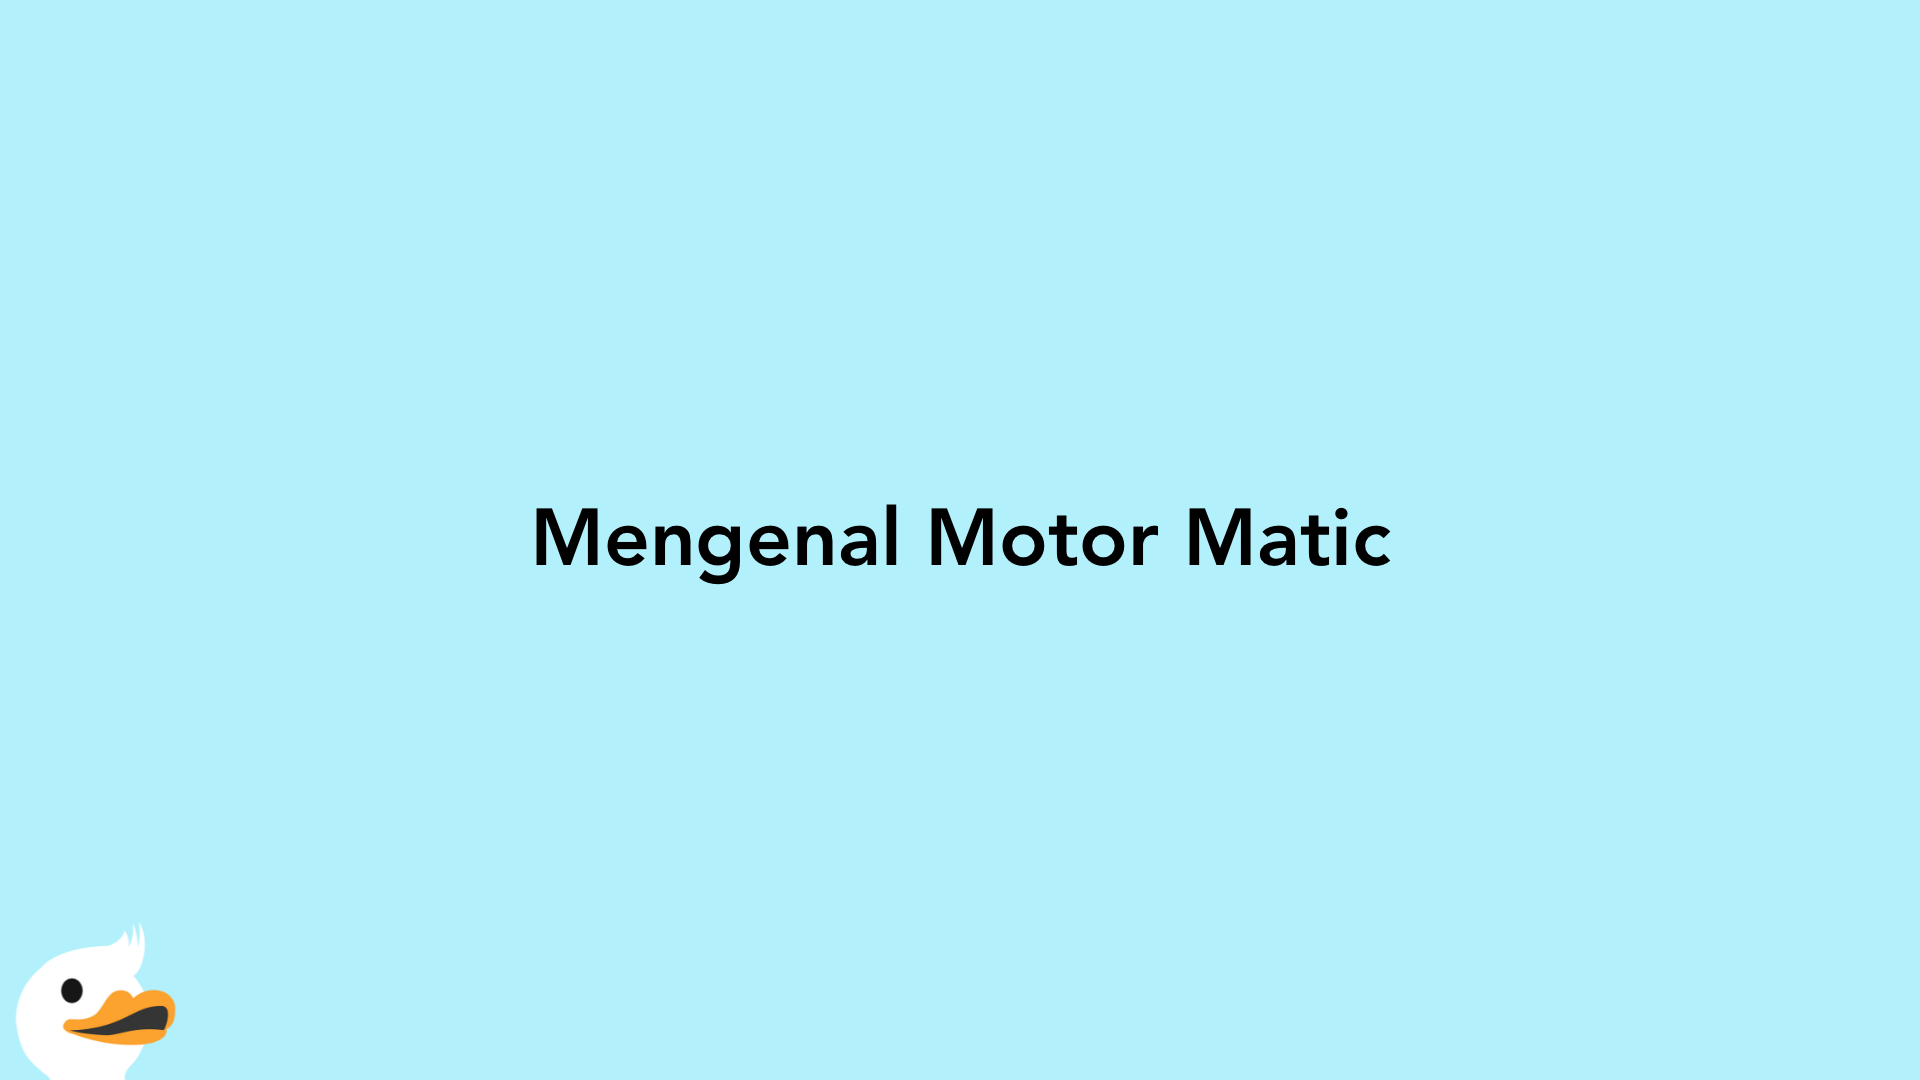 Mengenal Motor Matic